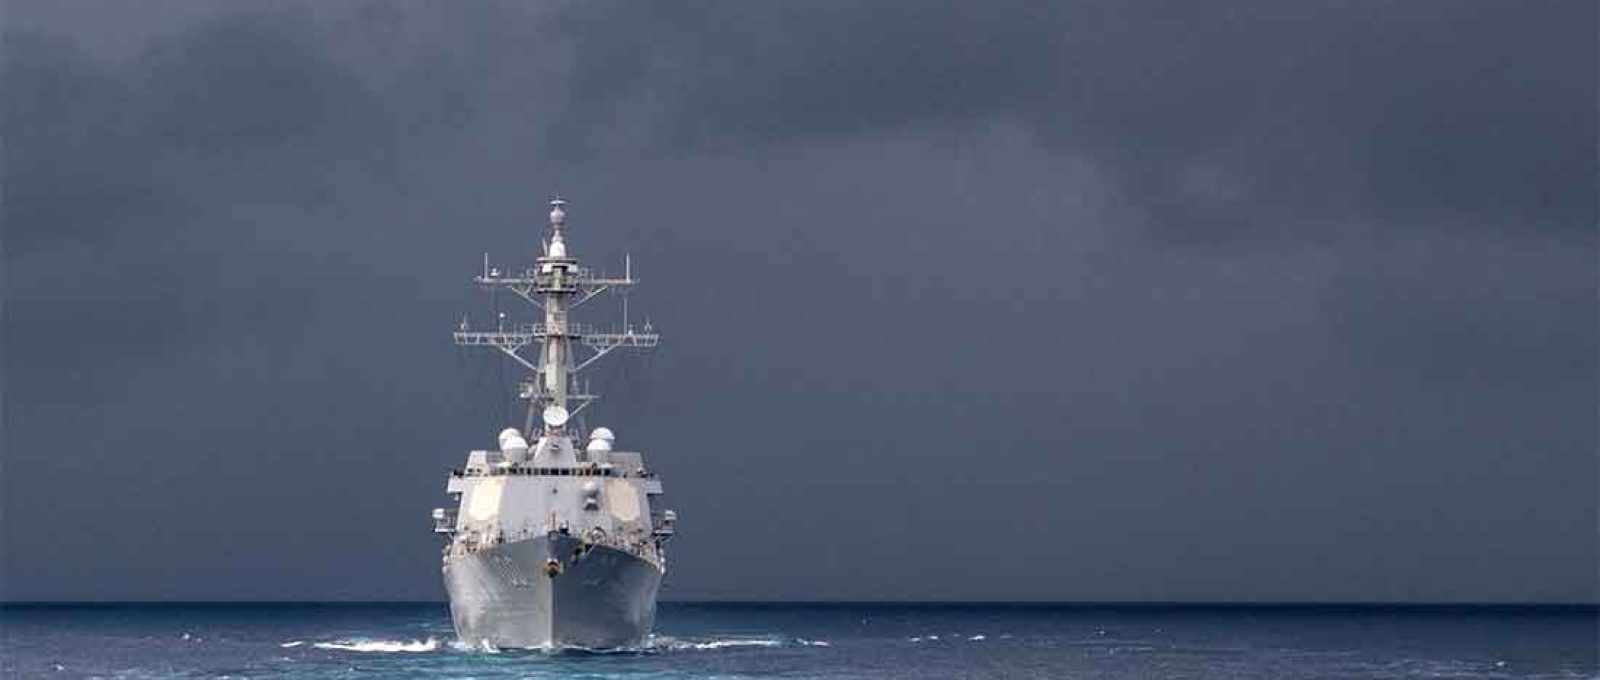 O destroier USS Kidd transita pelo Mar da China Meridional em novembro de 2017 (Foto: Kelsey J. Hockenberger/US Navy).